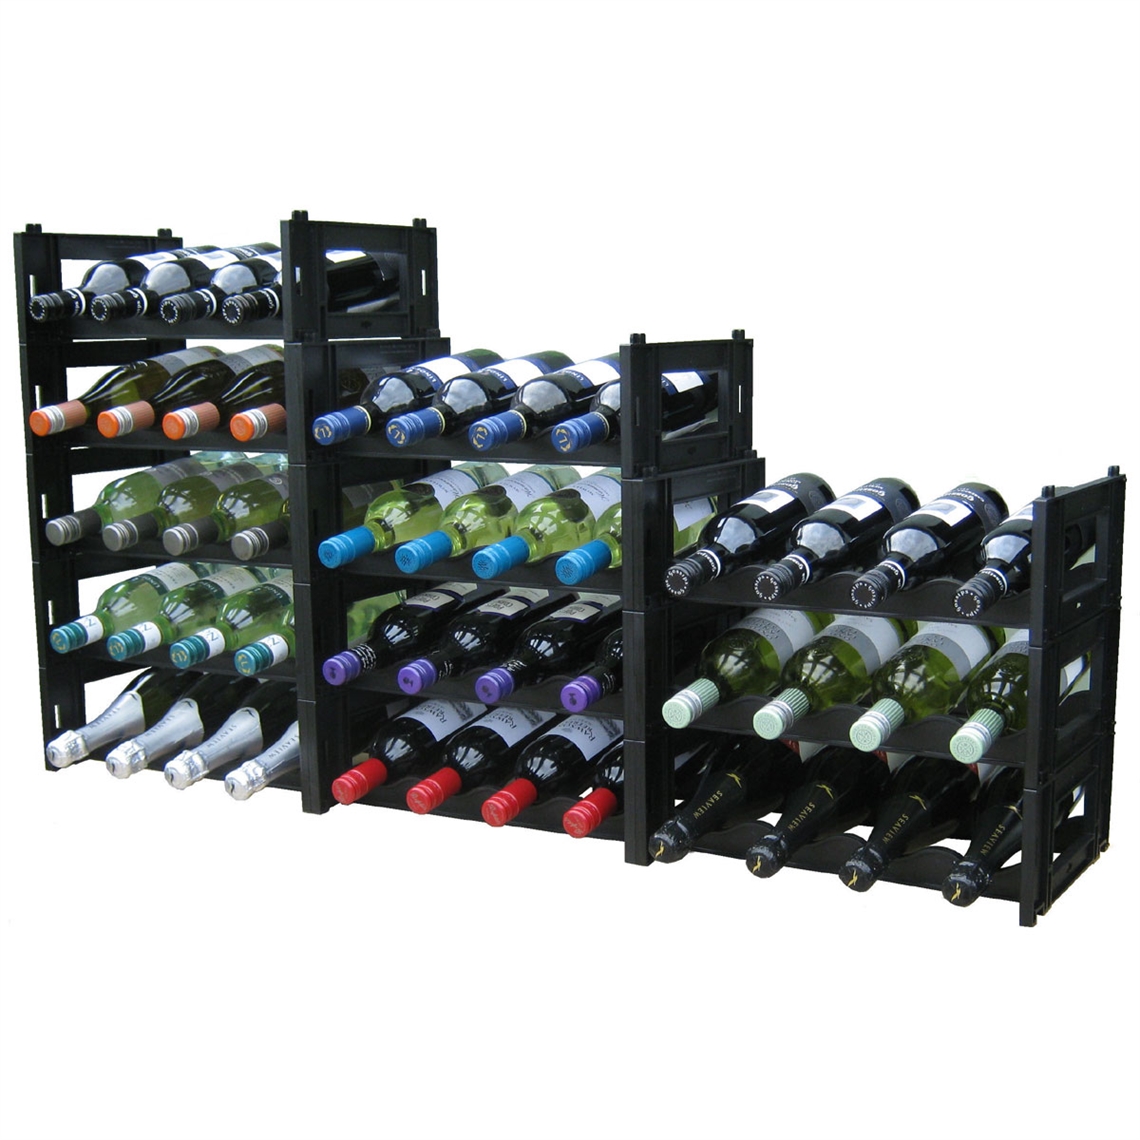 EziRak 36 Bottle Plastic Self Assembly Wine Rack - Black